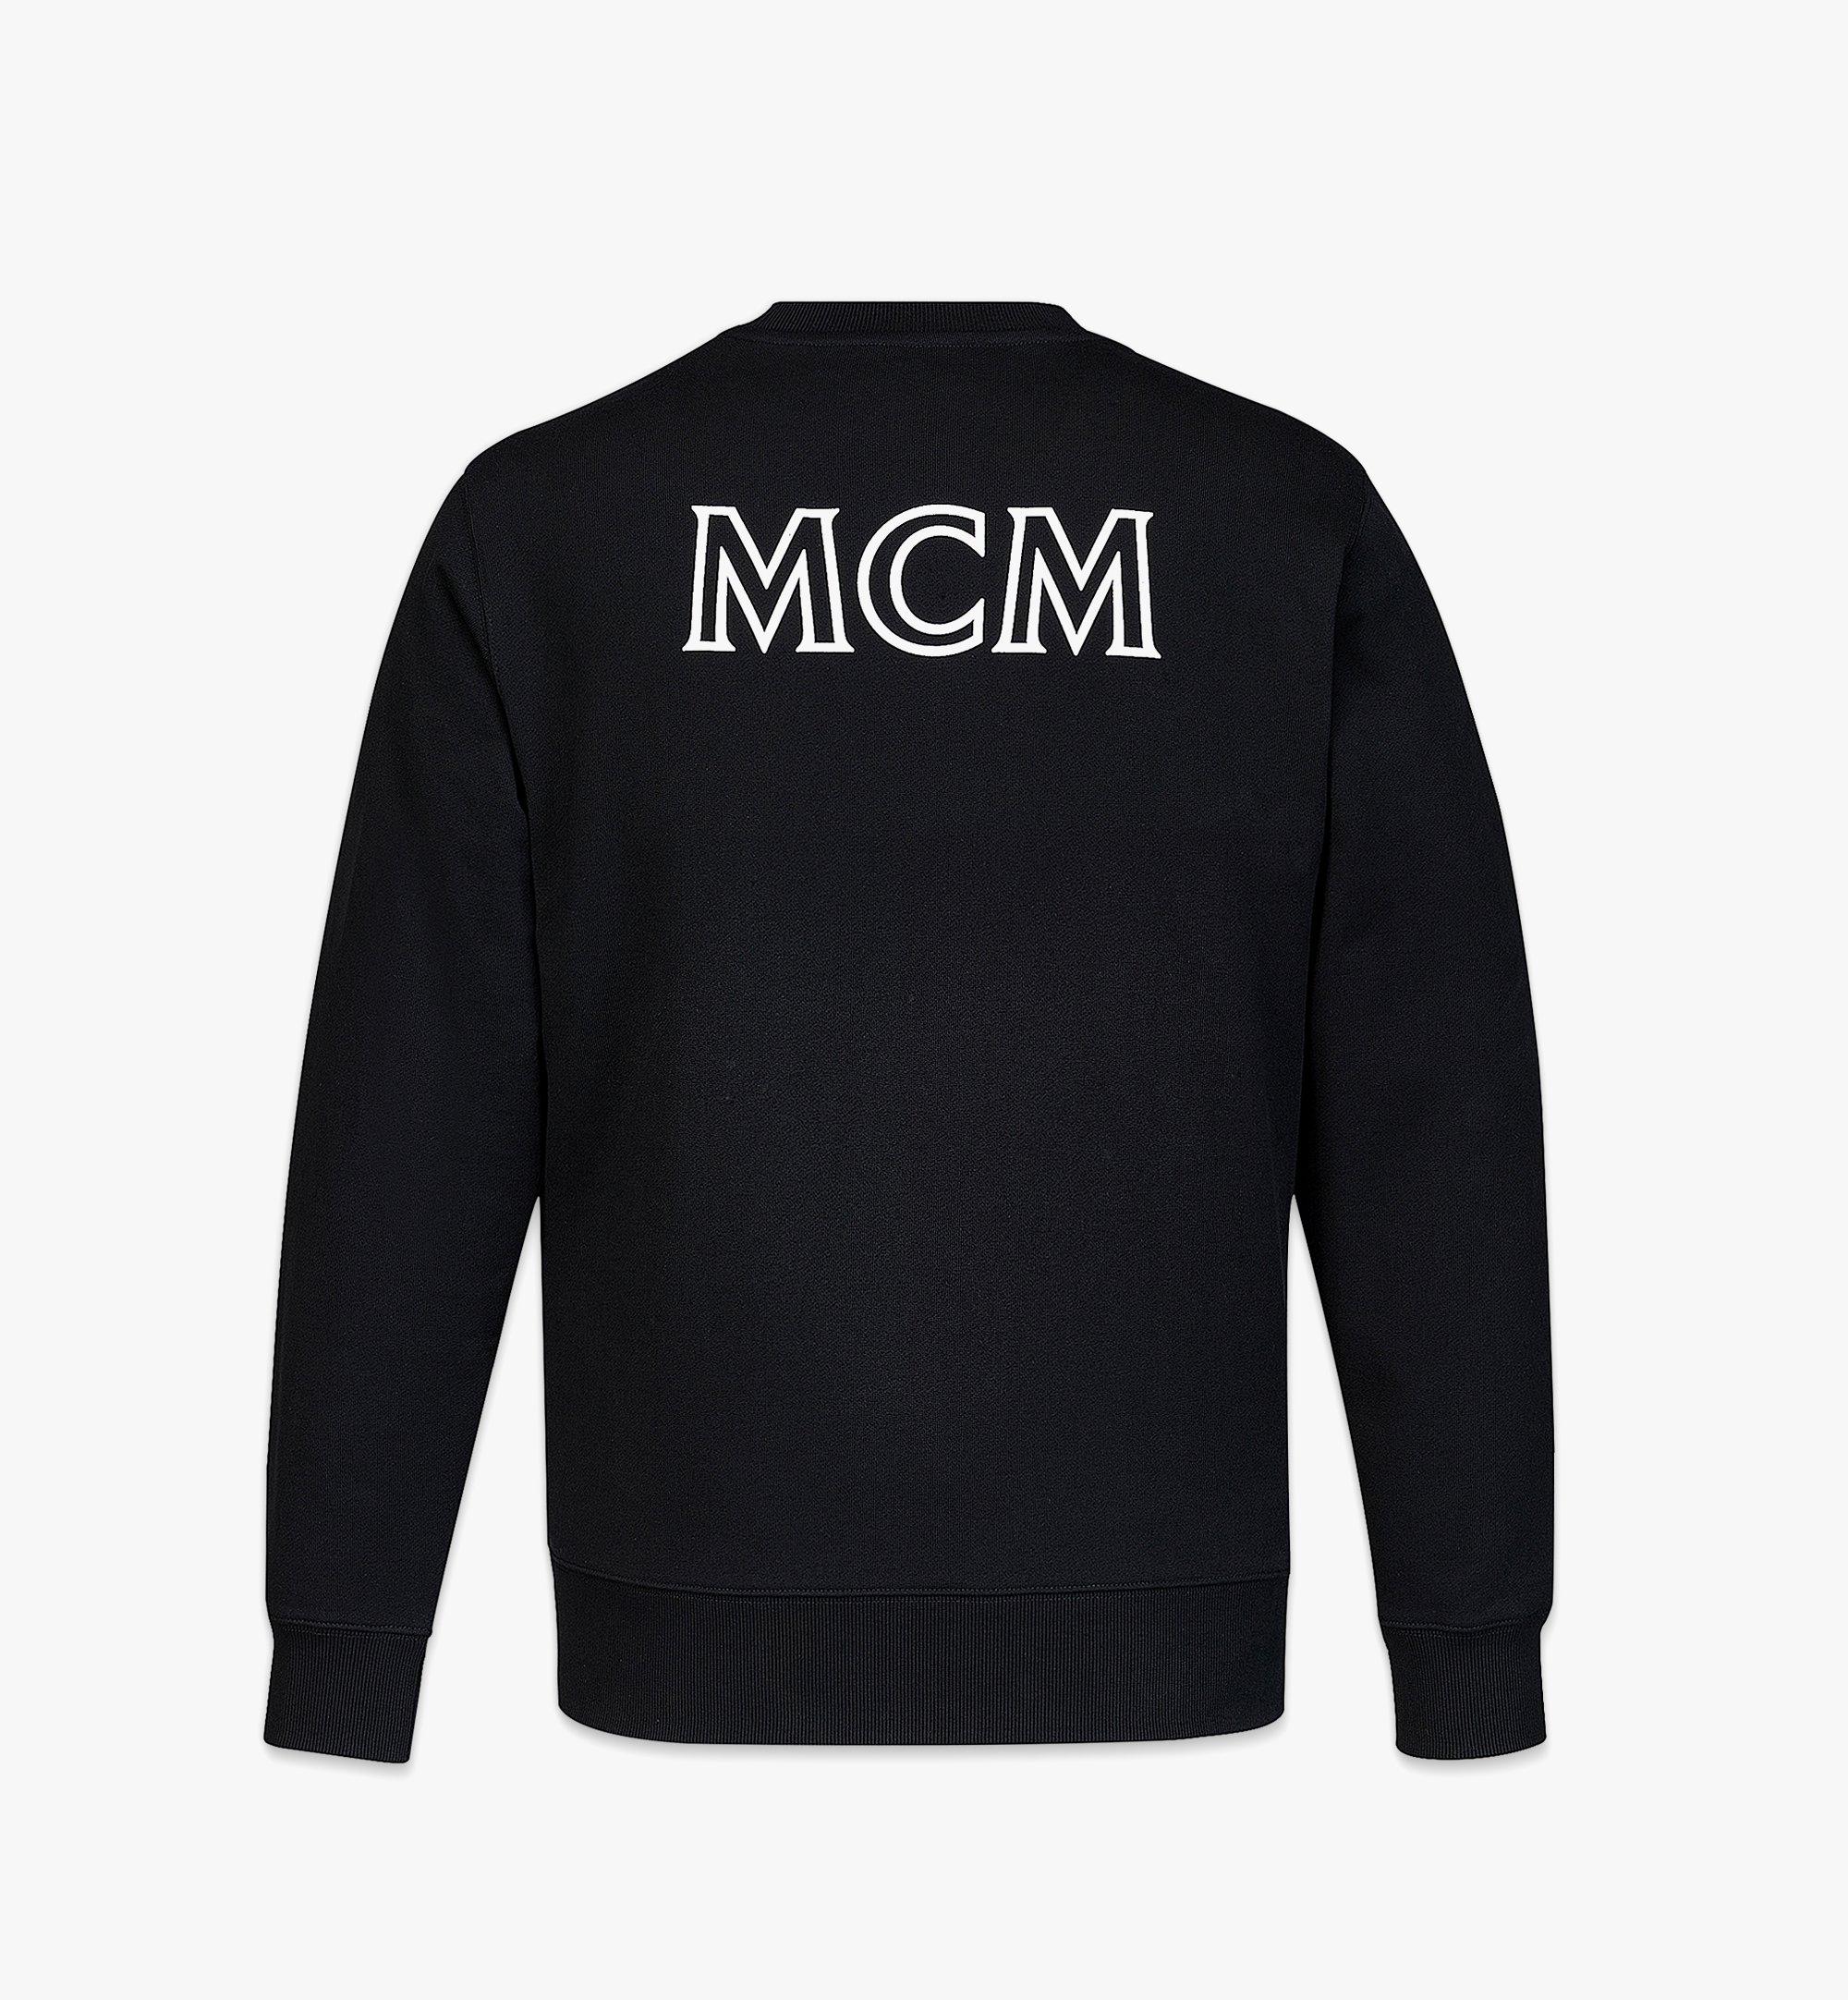 MCM เสื้อสเวตเชิ้ตปักโลโก้ MCM Essentials สำหรับผู้ชาย ทำจากผ้าฝ้ายออร์แกนิก Black MHABABC01BK00L มุมมองอื่น 1